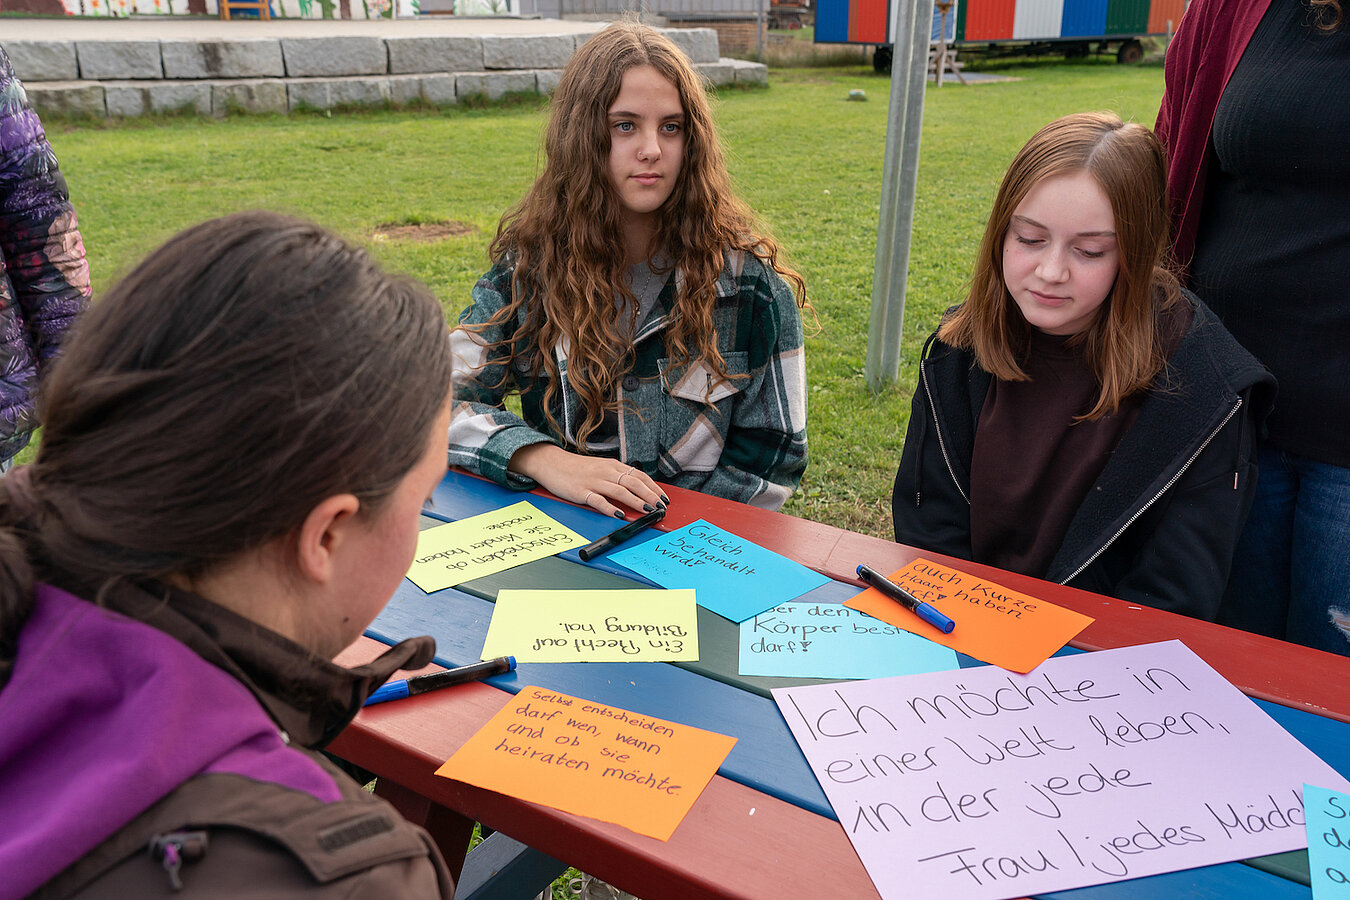 Drei Jugendliche sitzen an einem Tisch auf einer Wiese, auf dem Zettel mit verschiedenen Wünschen für Mädchen und Frauen auf der ganzen Welt